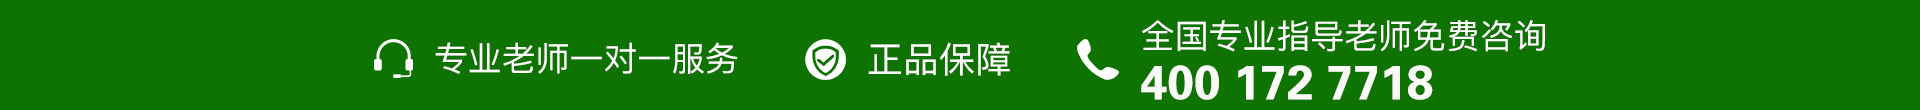 绿色电话-banner图下方-PC - 副本 (2).jpg